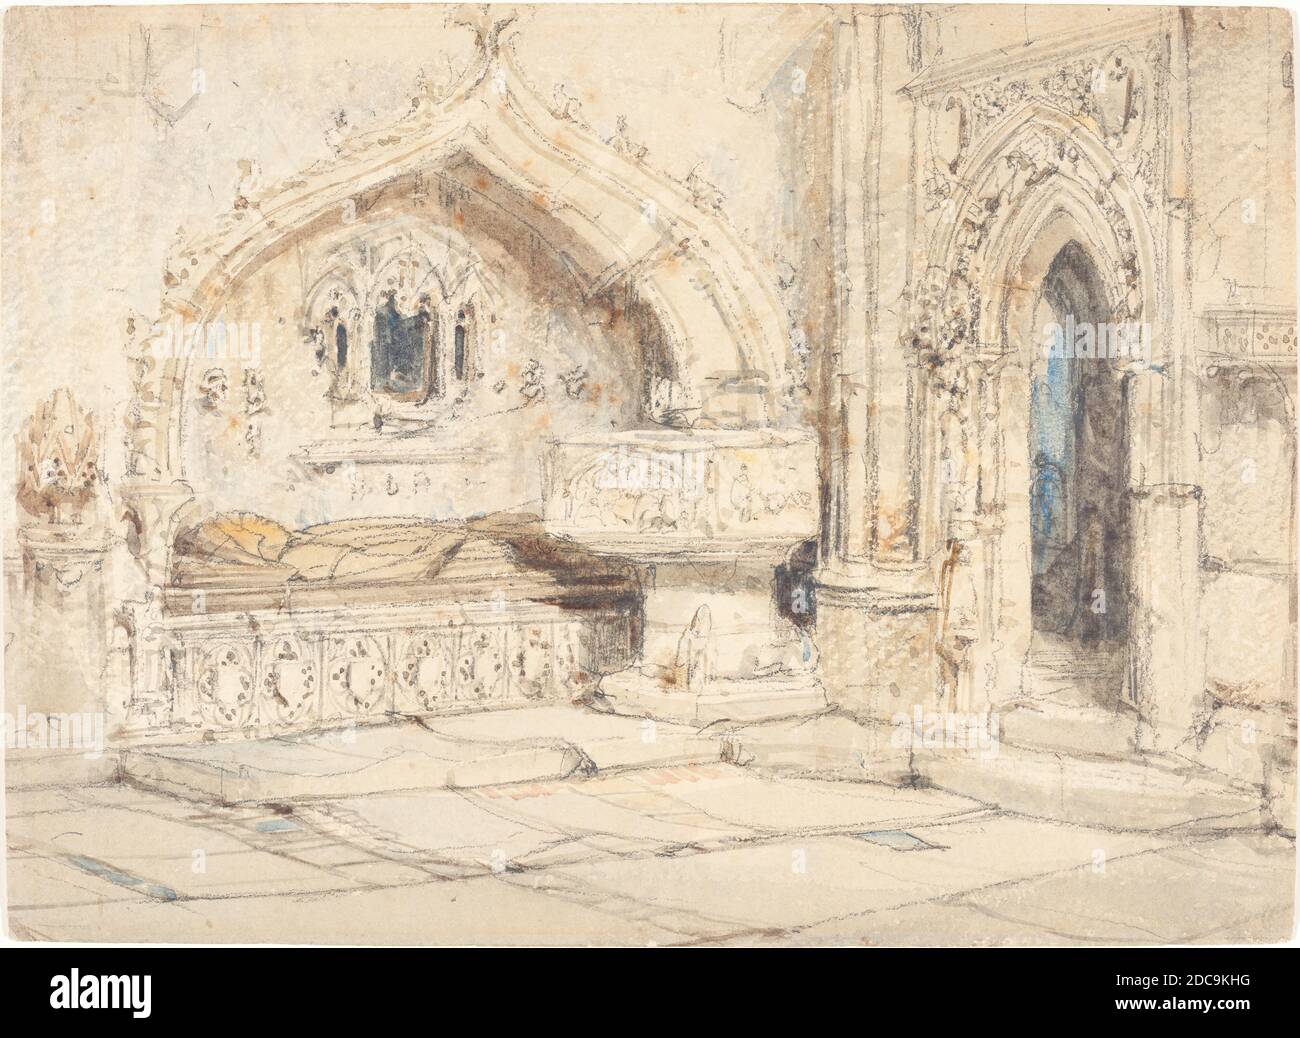 Louis Haghe, (artista), britannico, 1806 - 1885, interno di una chiesa con una tomba da muro e carattere medievale, acquerello e grafite su carta di wove, totale: 18.6 x 25.6 cm (7 5/16 x 10 1/16 pollici Foto Stock